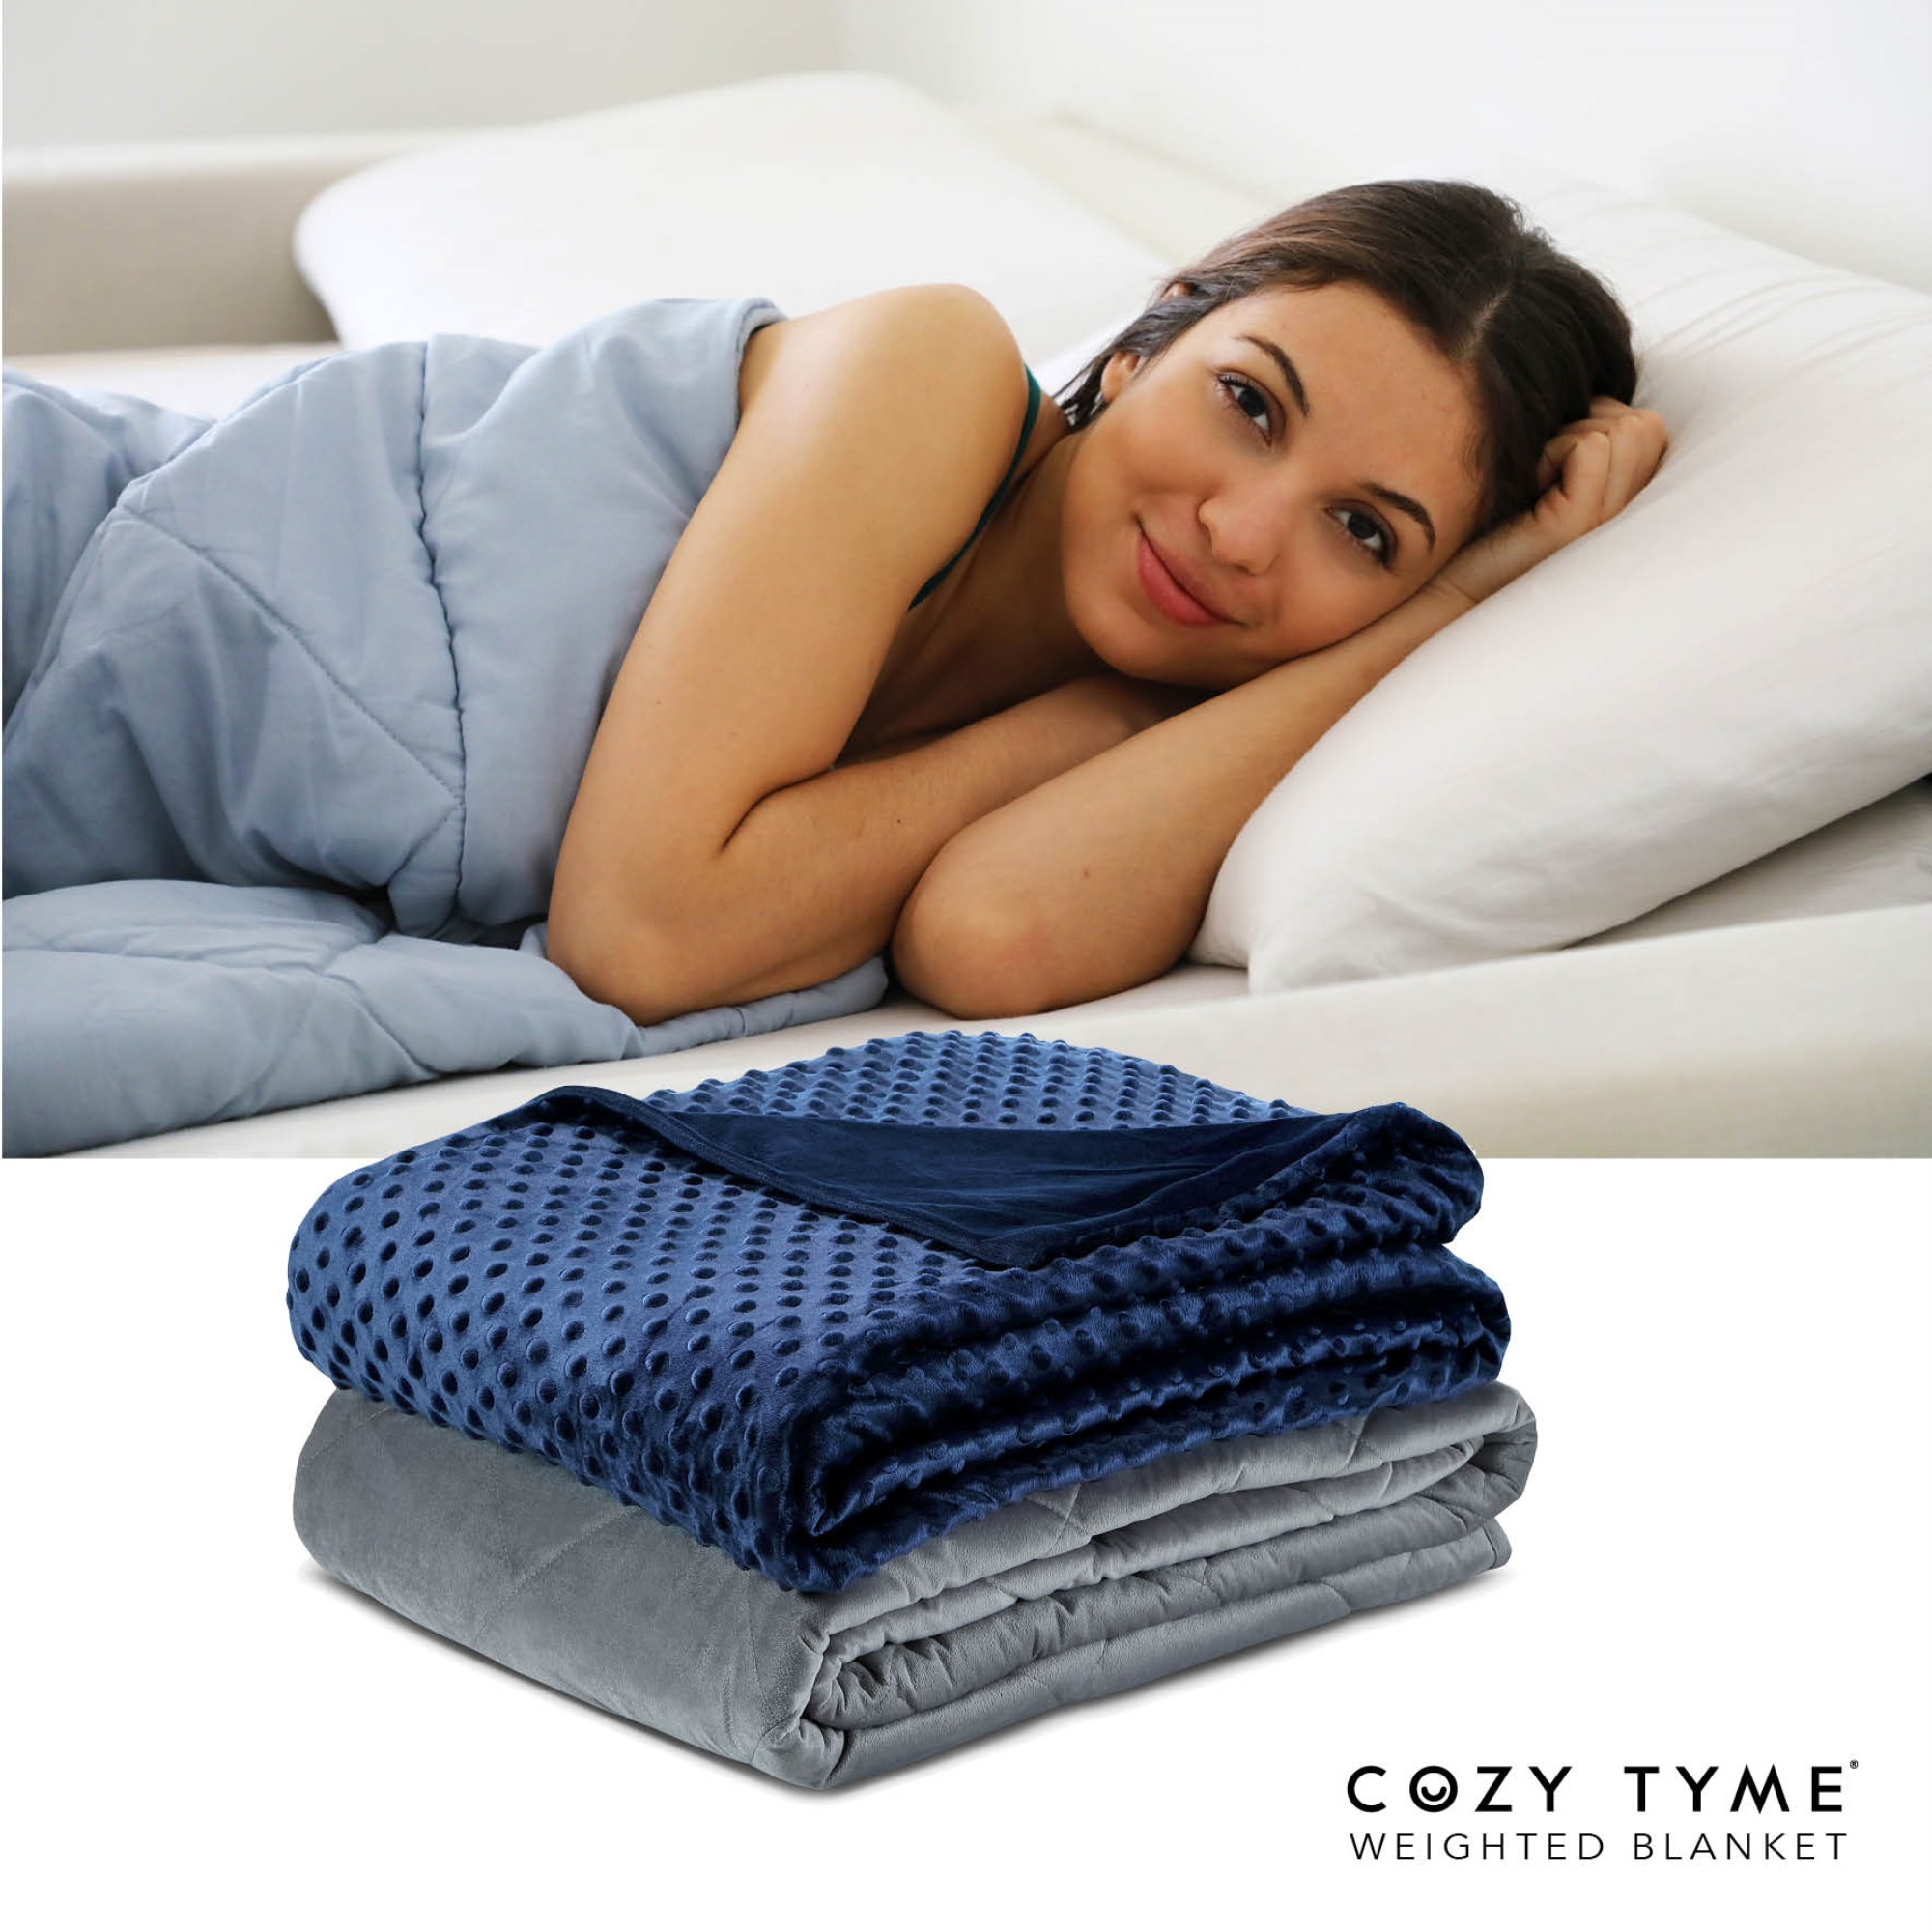 Cozy Tyme Navy Duvet: 100% Polyester, Blanket: 100% Cotton Throws 15 Pound Calm Sleeping